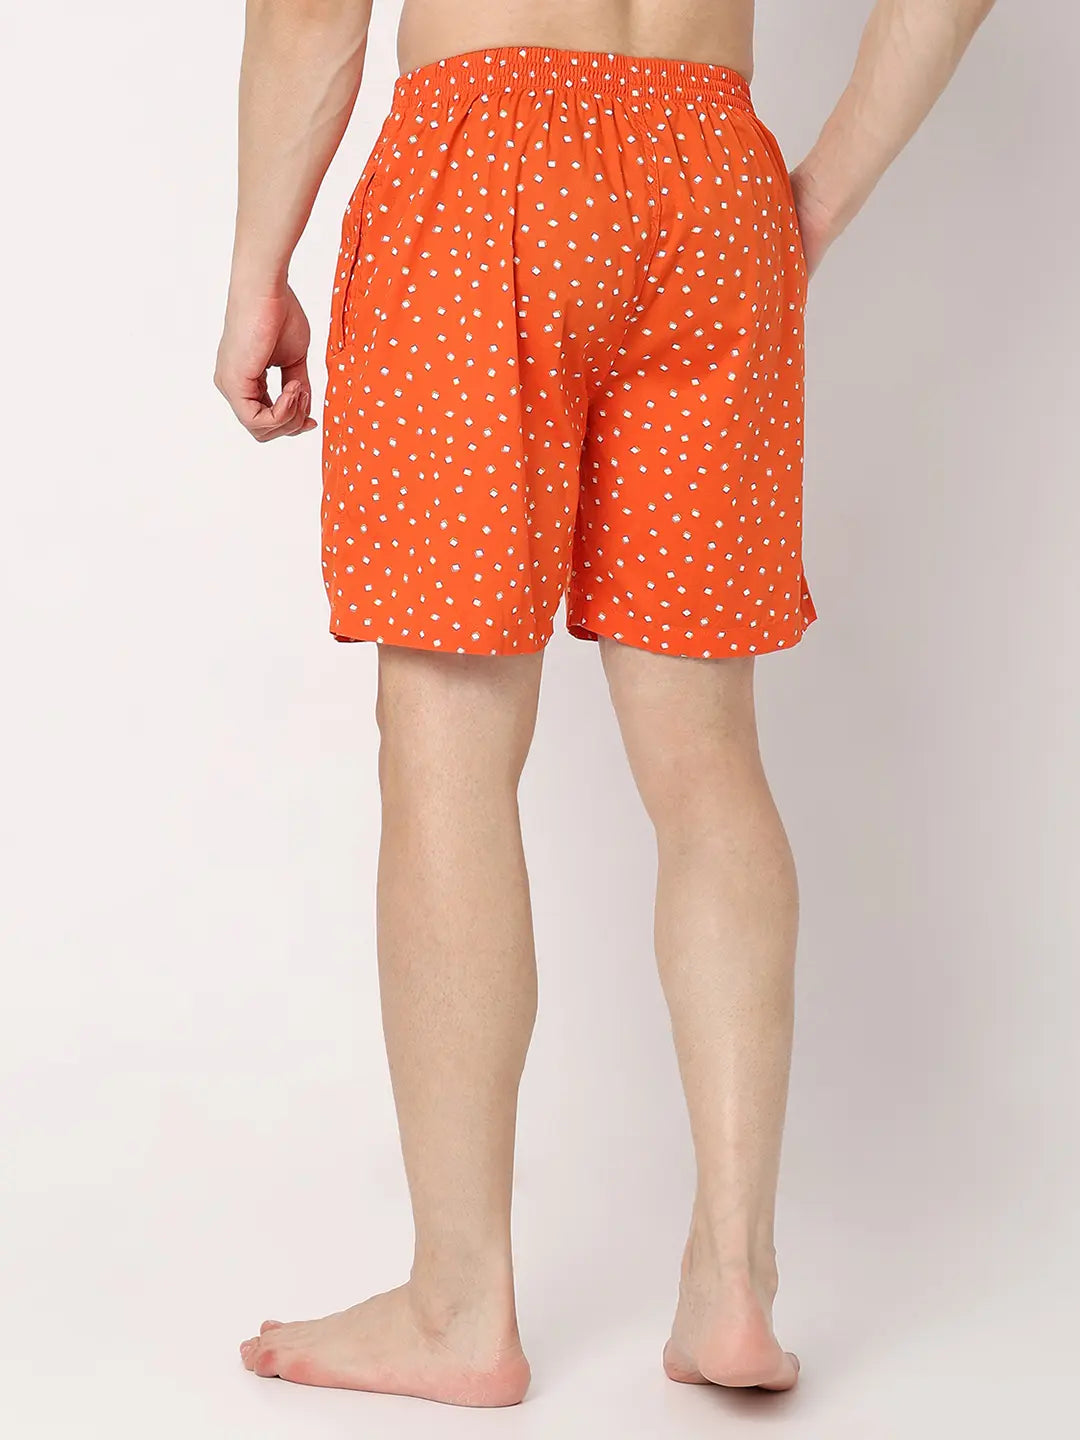 Underjeans by Spykar Men Premium Orange Cotton Blend Regular Fit Boxer Shorts